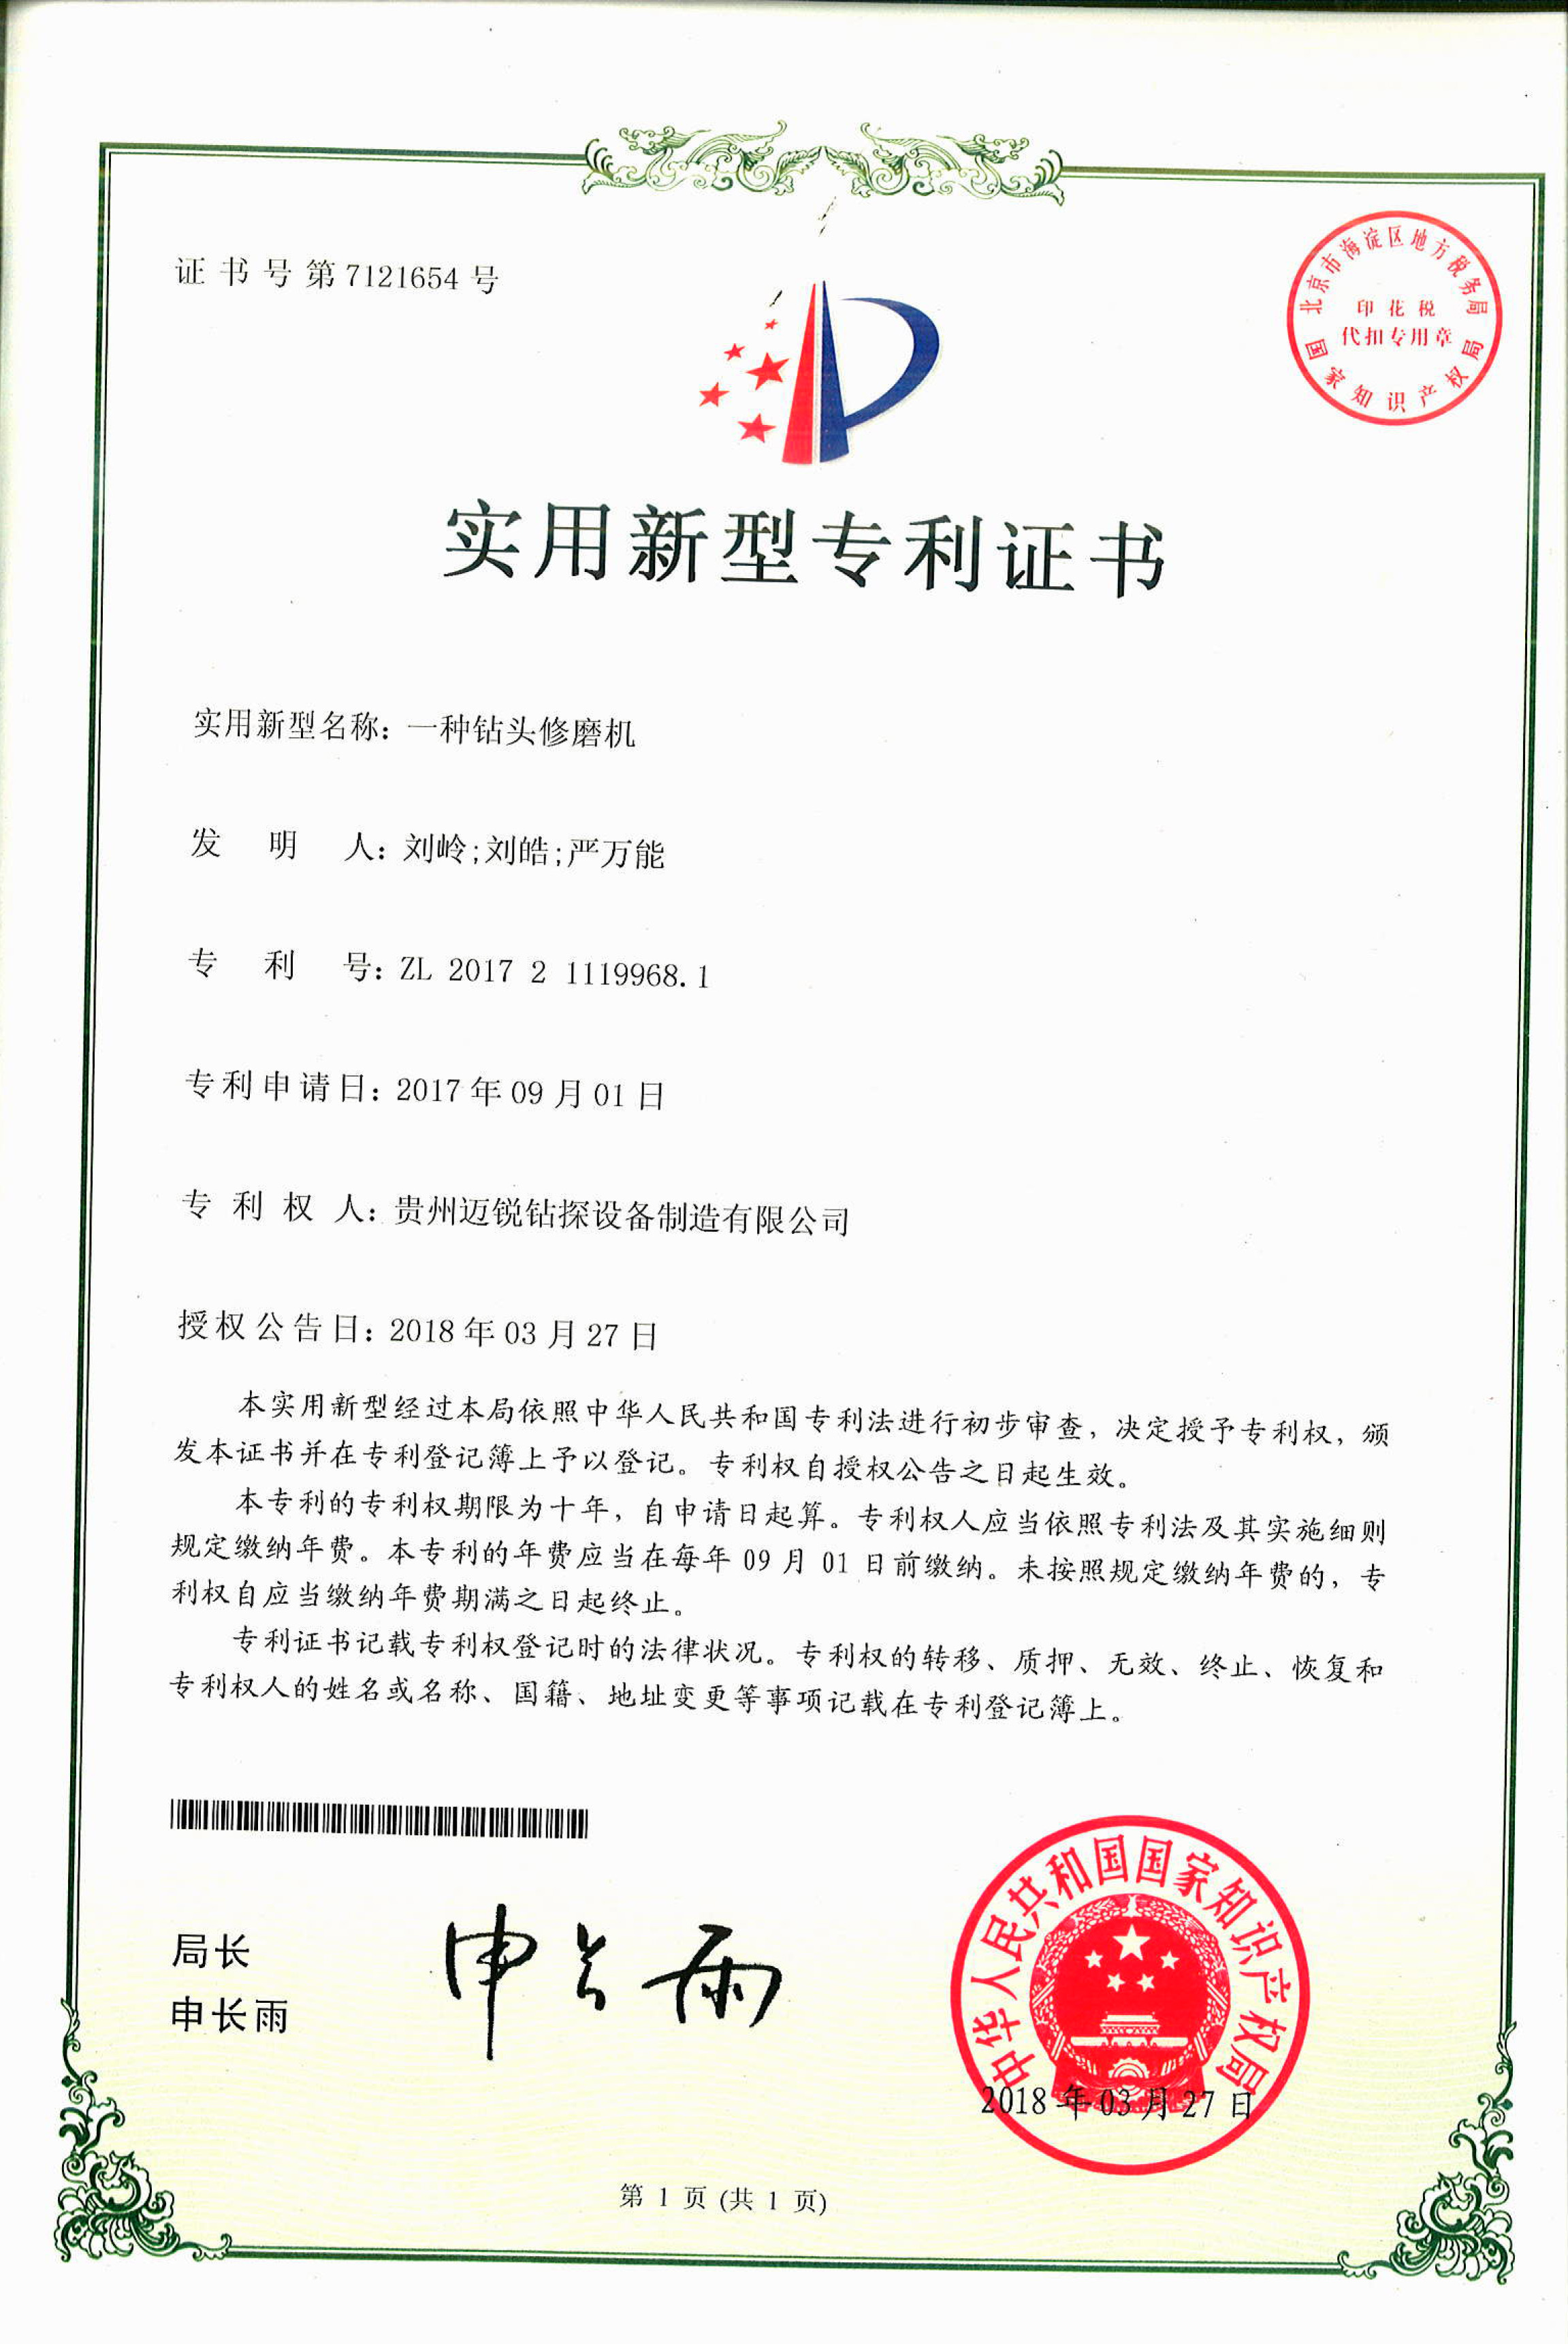 慶賀我司獲得 國家頒發 5項 實用新型專利證書